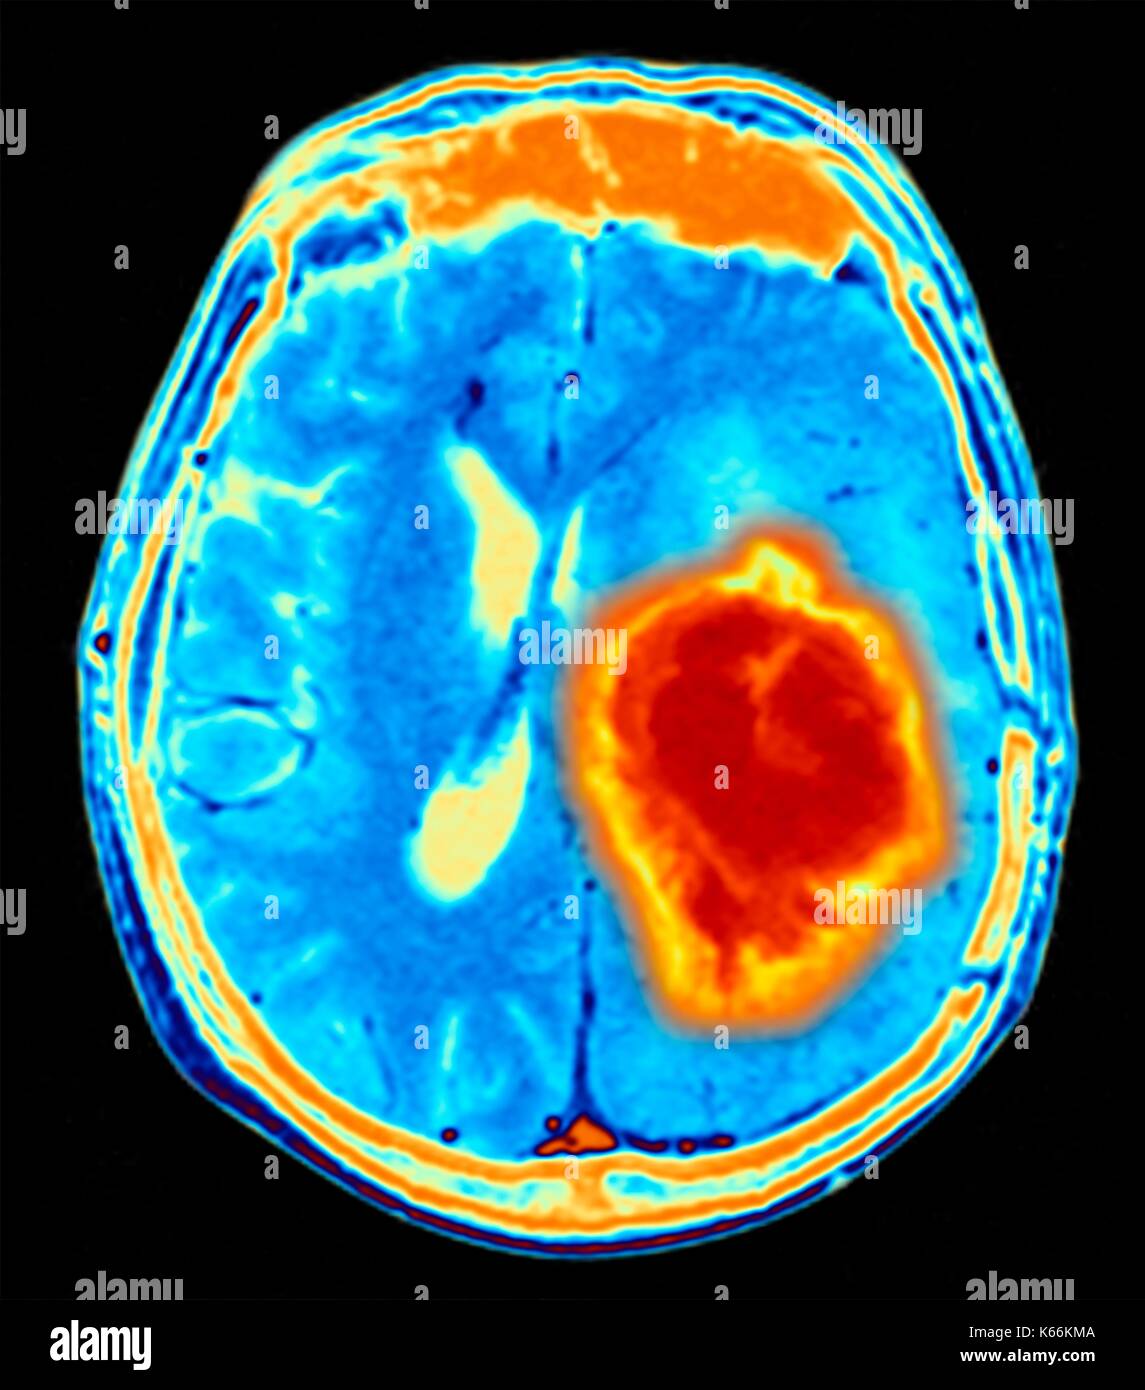 Tumeur au cerveau. L'imagerie par résonance magnétique de couleur (IRM) d'une section axiale à travers le cerveau montrant une tumeur métastatique. En bas à gauche est la tumeur (rouge-jaune) Cette tumeur est atteinte dans l'hémisphère cérébral ; l'autre hémisphère est à droite. Les globes oculaires - non visible -sont en haut. Cancer métastatique est un cancer secondaire de la propagation de la maladie d'ailleurs dans l'organisme. Les tumeurs cérébrales métastatiques sont malignes. Ils causent généralement des dommages nerveux et compression du cerveau Banque D'Images